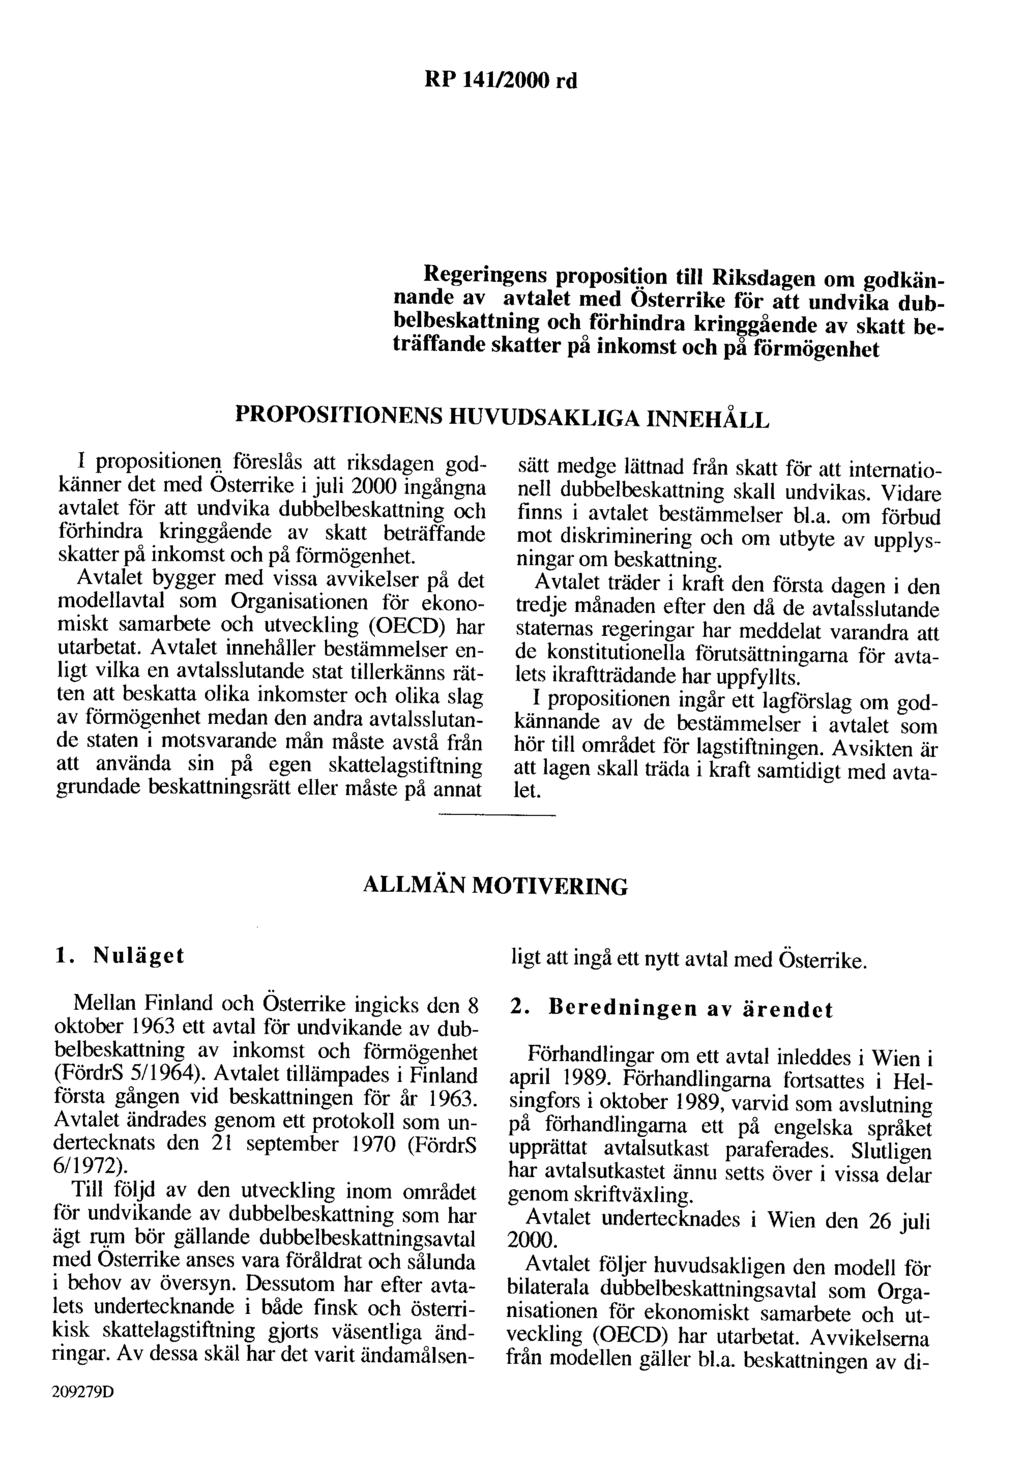 RP 141/2000 rd Regeringens proposition till Riksdagen om godkännande av avtalet med Osterrike för att undvika dubbelbeskattning och förhindra kringgående av skatt beträffande skatter på inkomst och